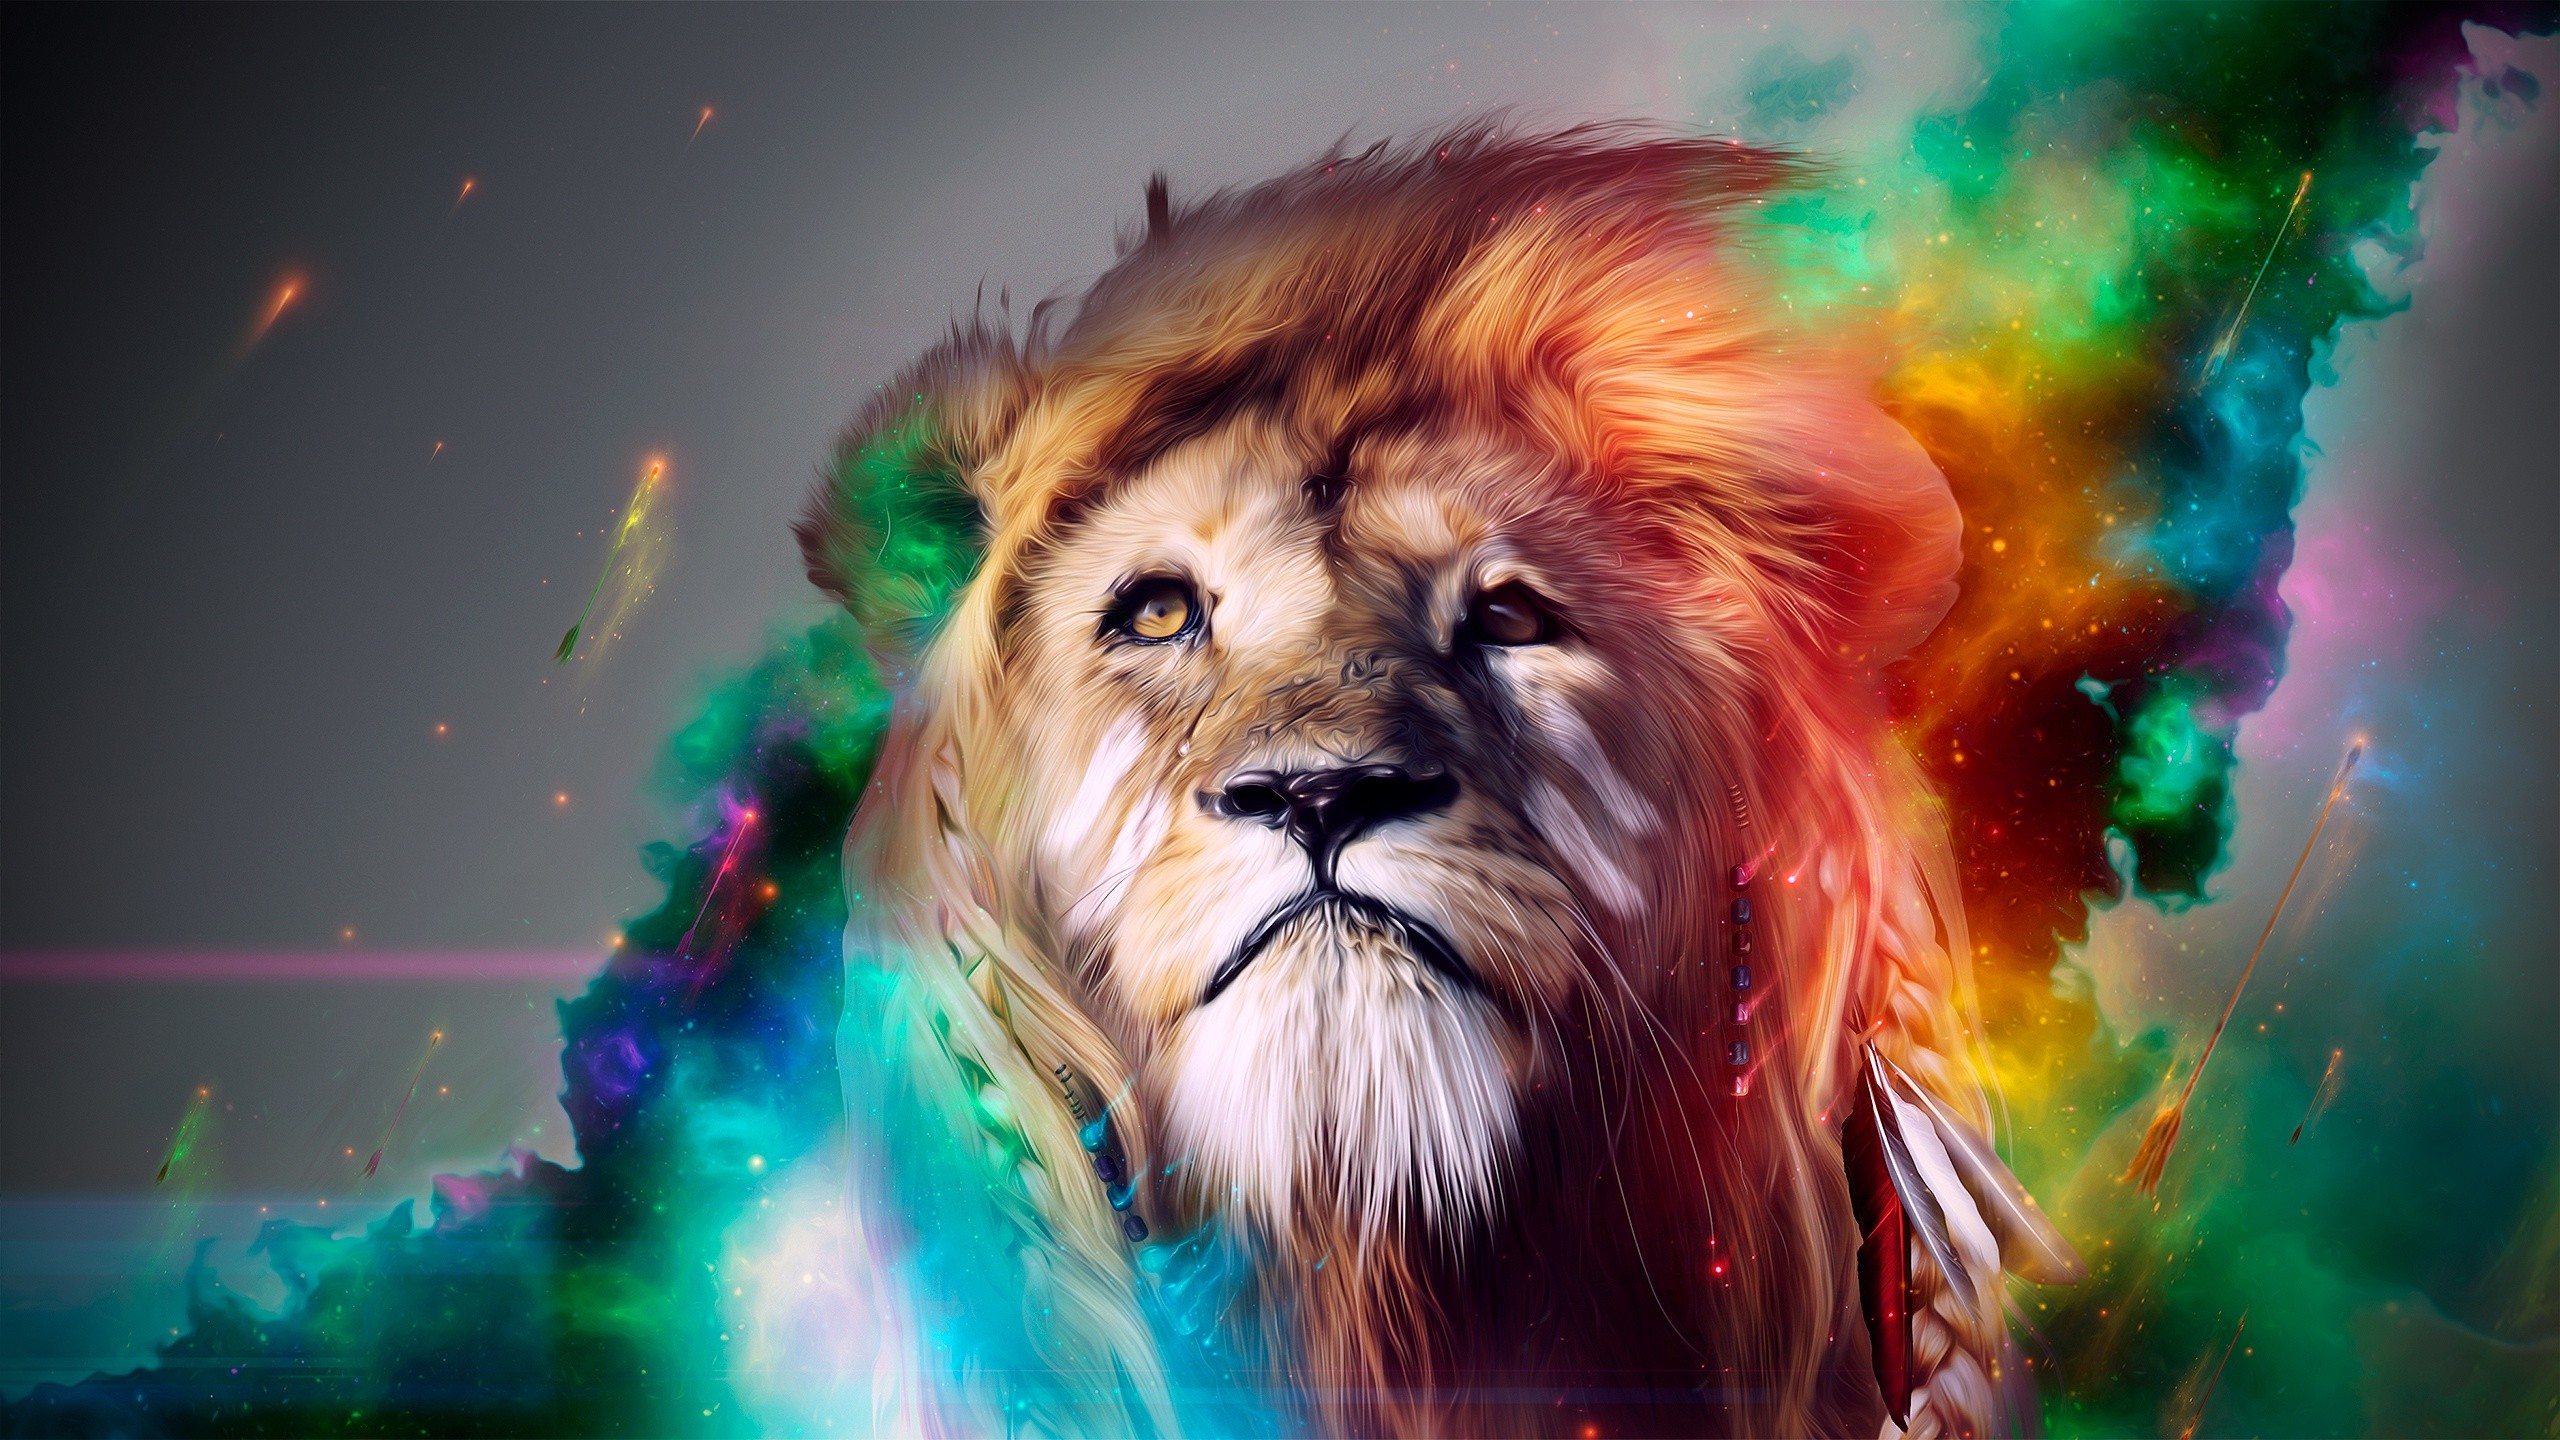 Hình nền sư tử – Tổng hợp hình nền sư tử đẹp cho máy tính